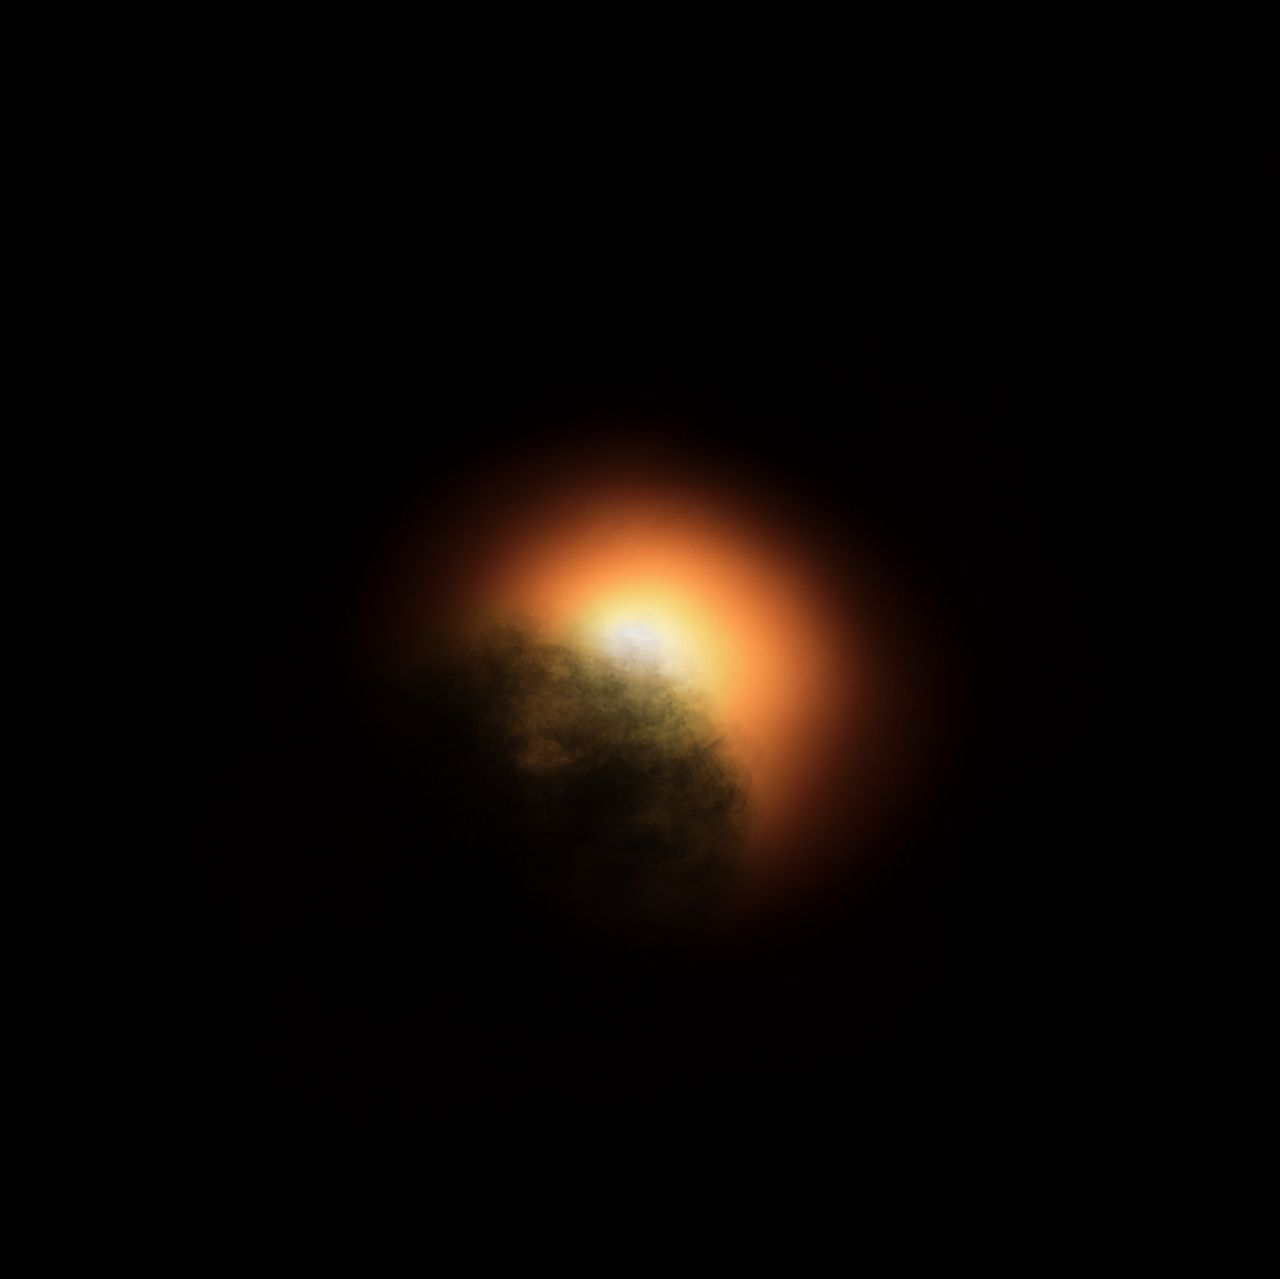 Bewerkte foto van Betelgeuze met stofwolk.